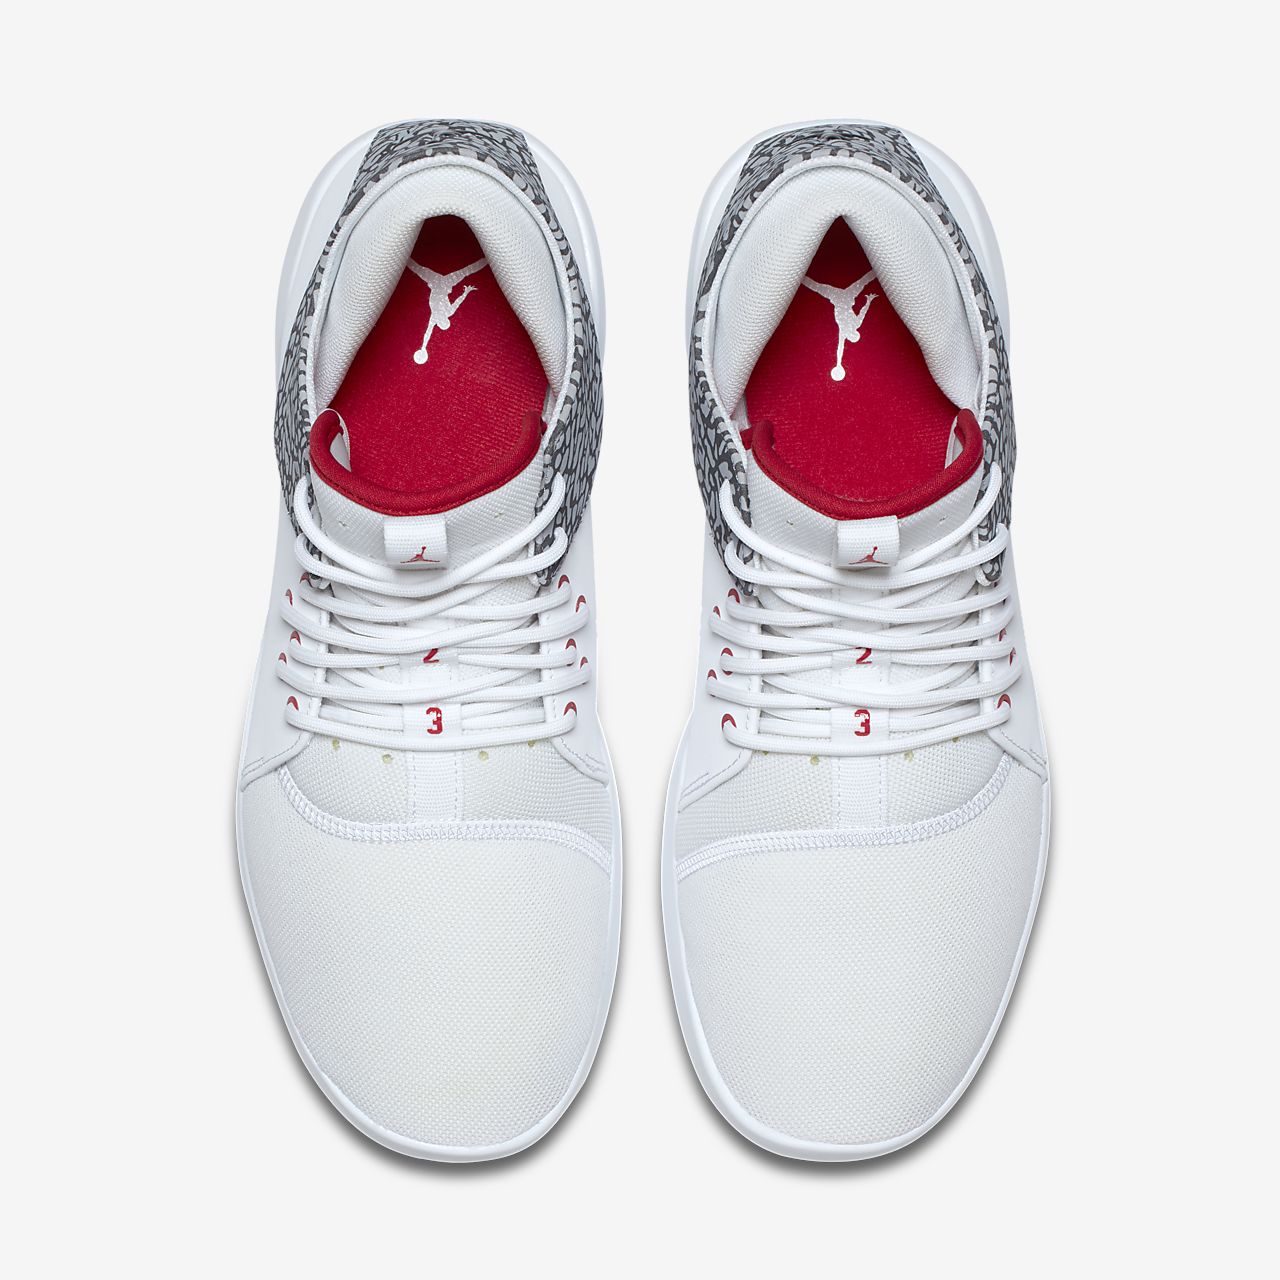 Cheap New Style Nike Air Jordan 10 Mint Pack Customs